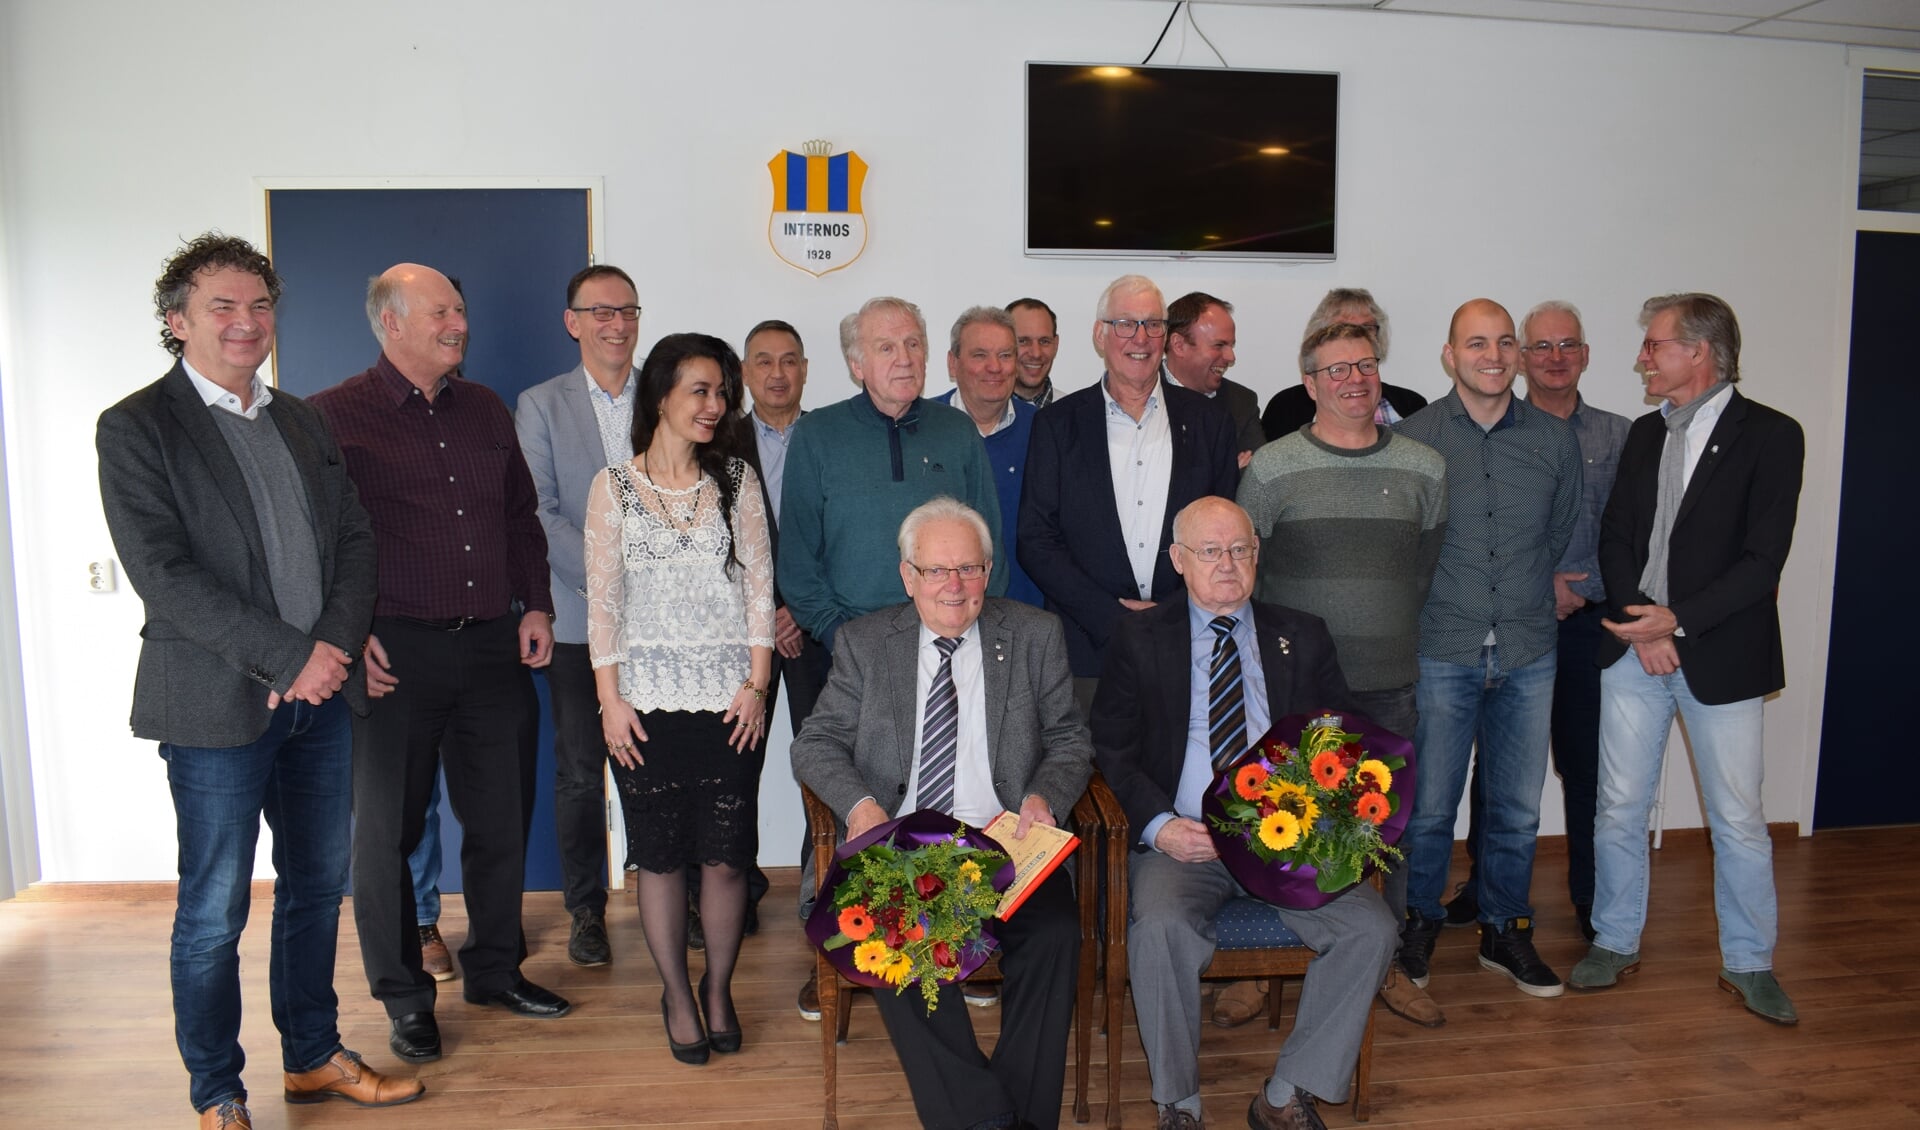 De aanwezige jubilarissen met het nieuwe bestuur van vv Internos. In het midden gezeten Jan Meesters (links) en Jos Martens. FOTO STELLA MARIJNISSEN